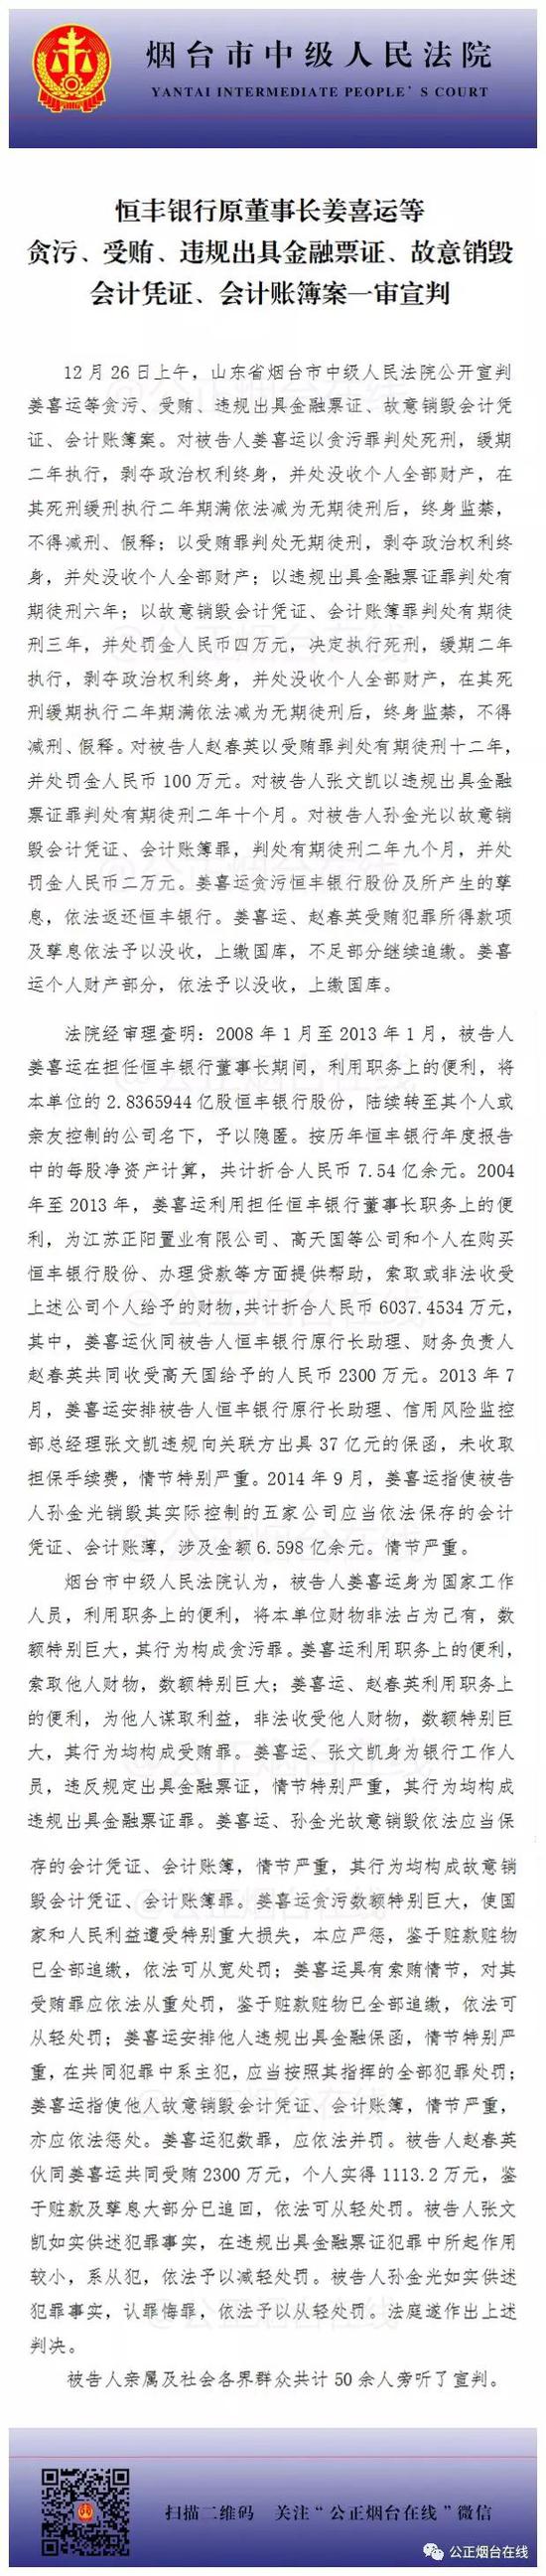 恒丰银行原董事长姜喜运被判死缓并处没收个人全部财产 鲸吞股份案值7.5亿 